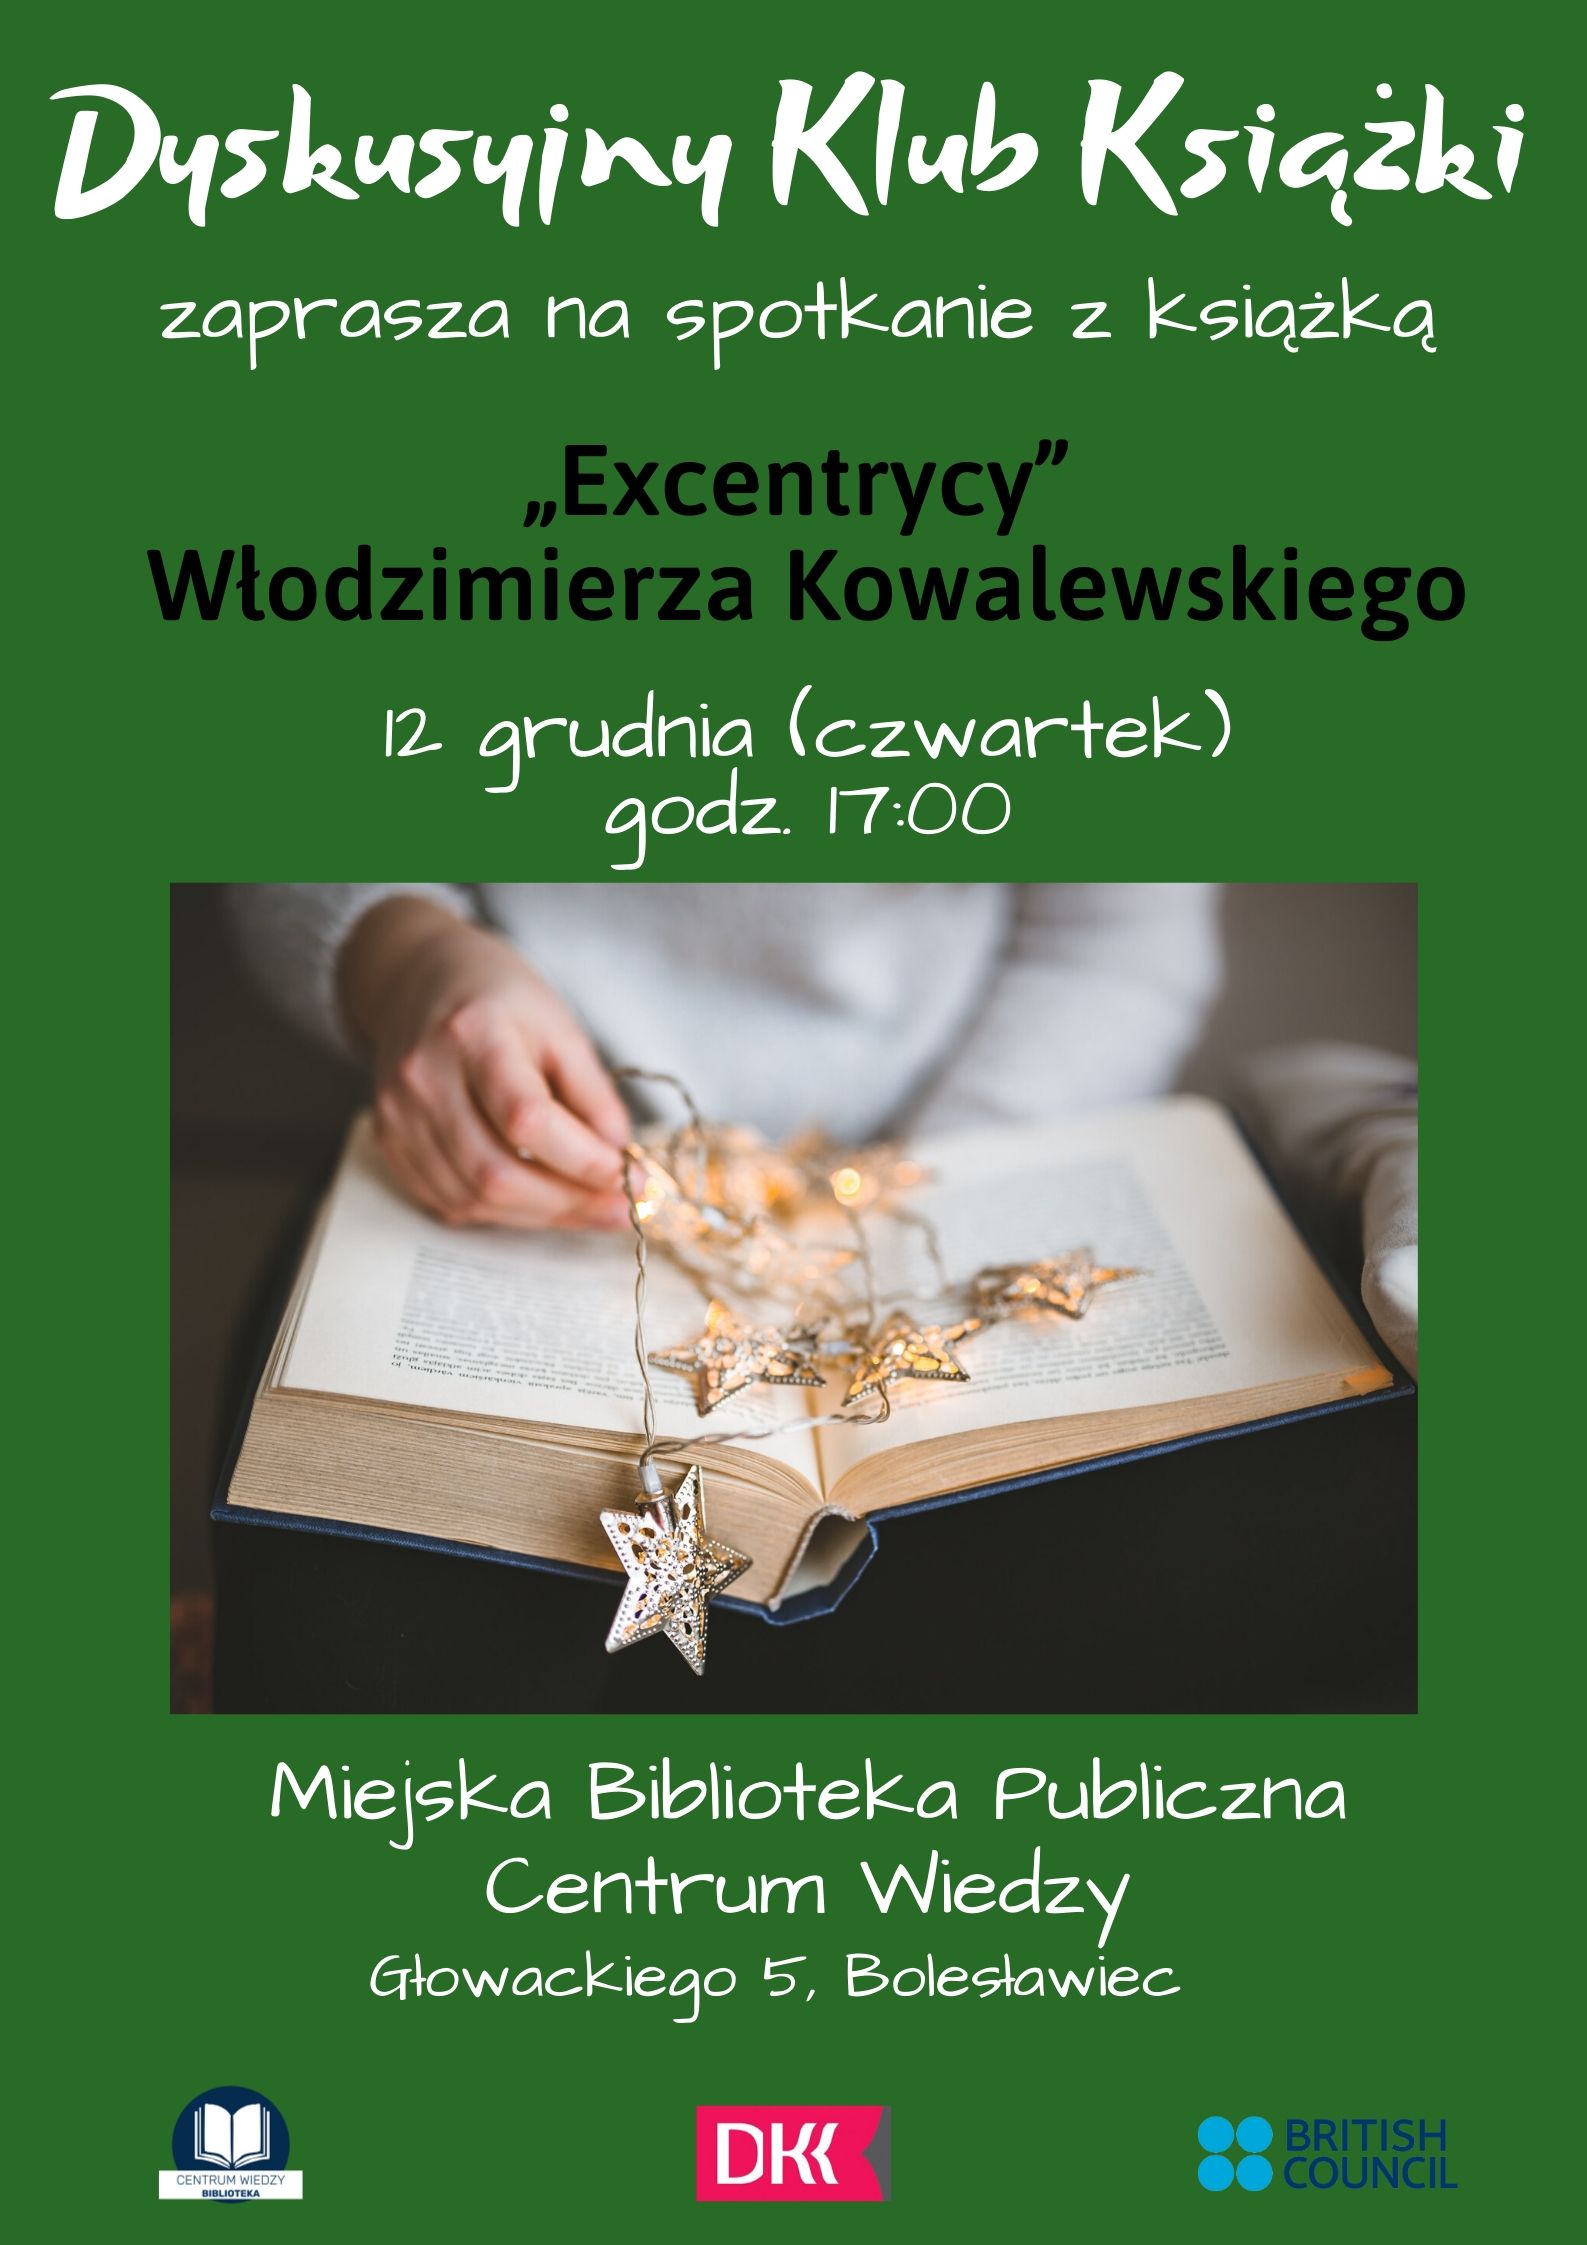 Włodzimierz Kowalewski - Excentrycy